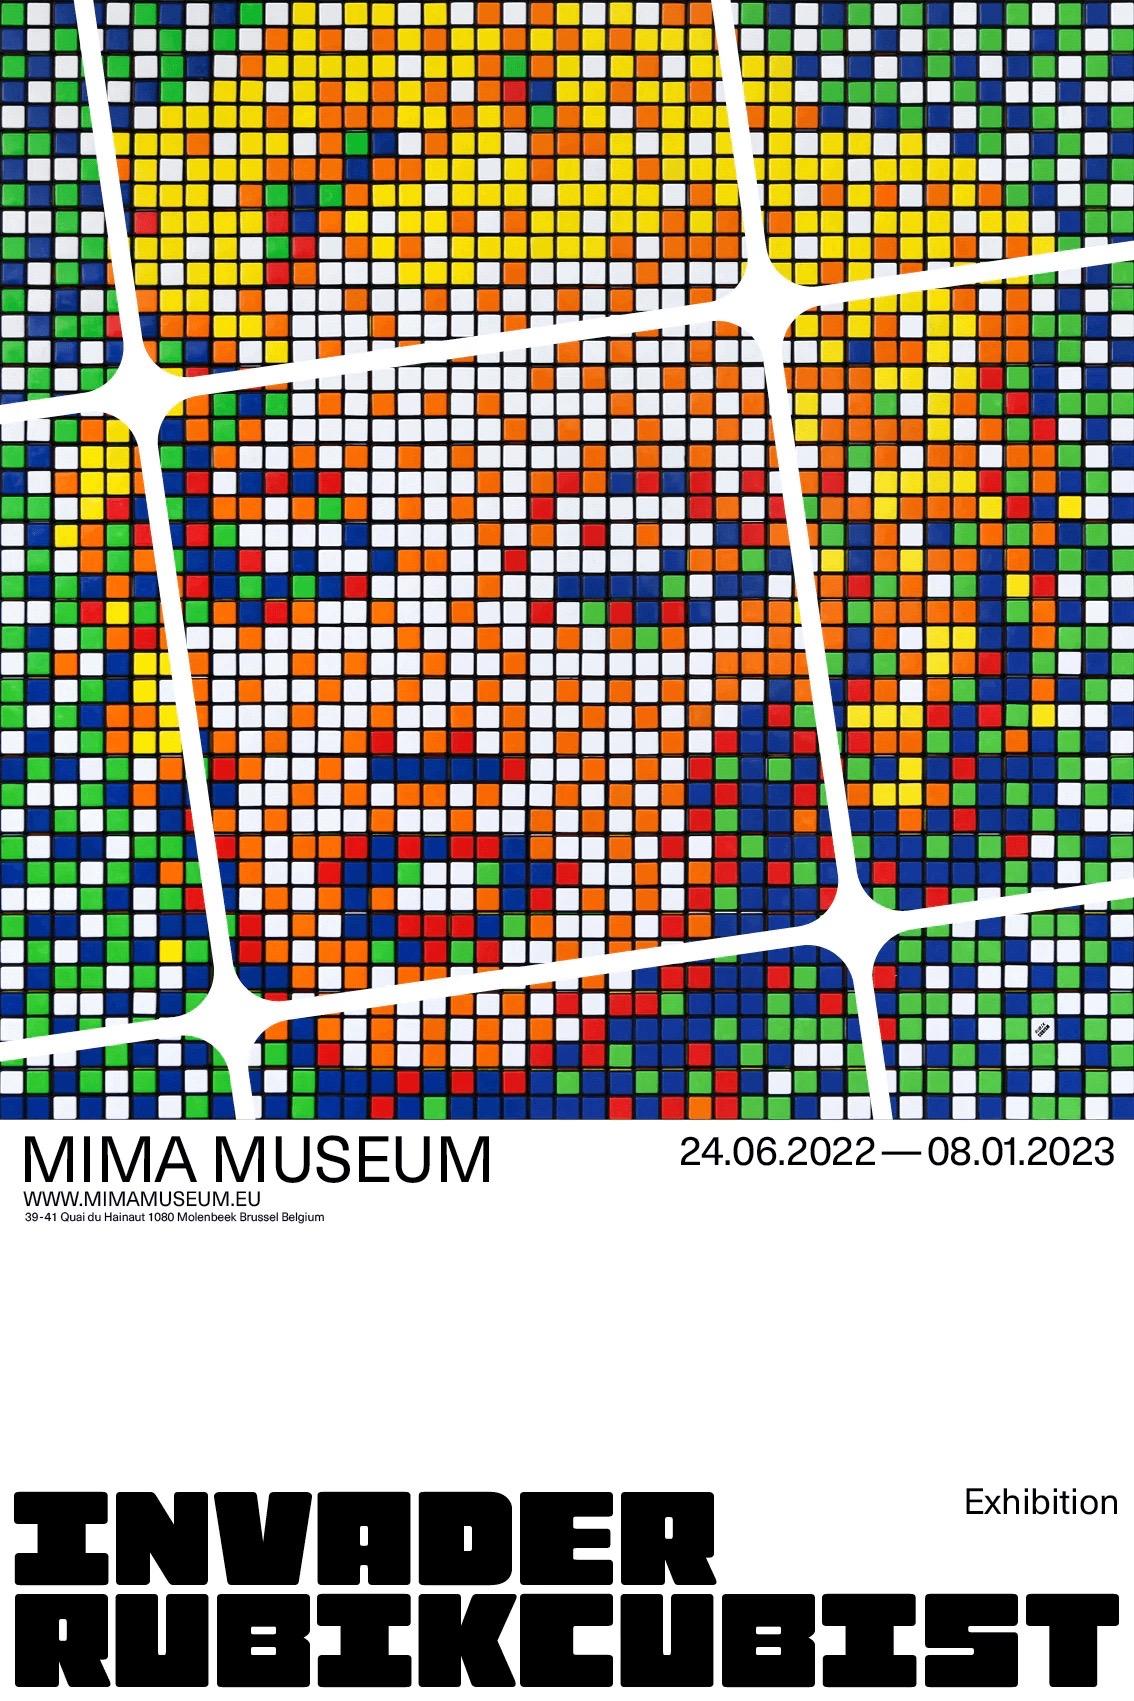 Invader, Rubikkubistisches MIMA-Poster, 2022

Farbige Offsetlithografie auf 130 g/m² Arctic Volume Silk-Posterpapier aus der MIMA-Galerieausstellung von Invader in Brüssel  

40 x 60 cm (15,7 x 23,6 Zoll)

Offene Ausgabe